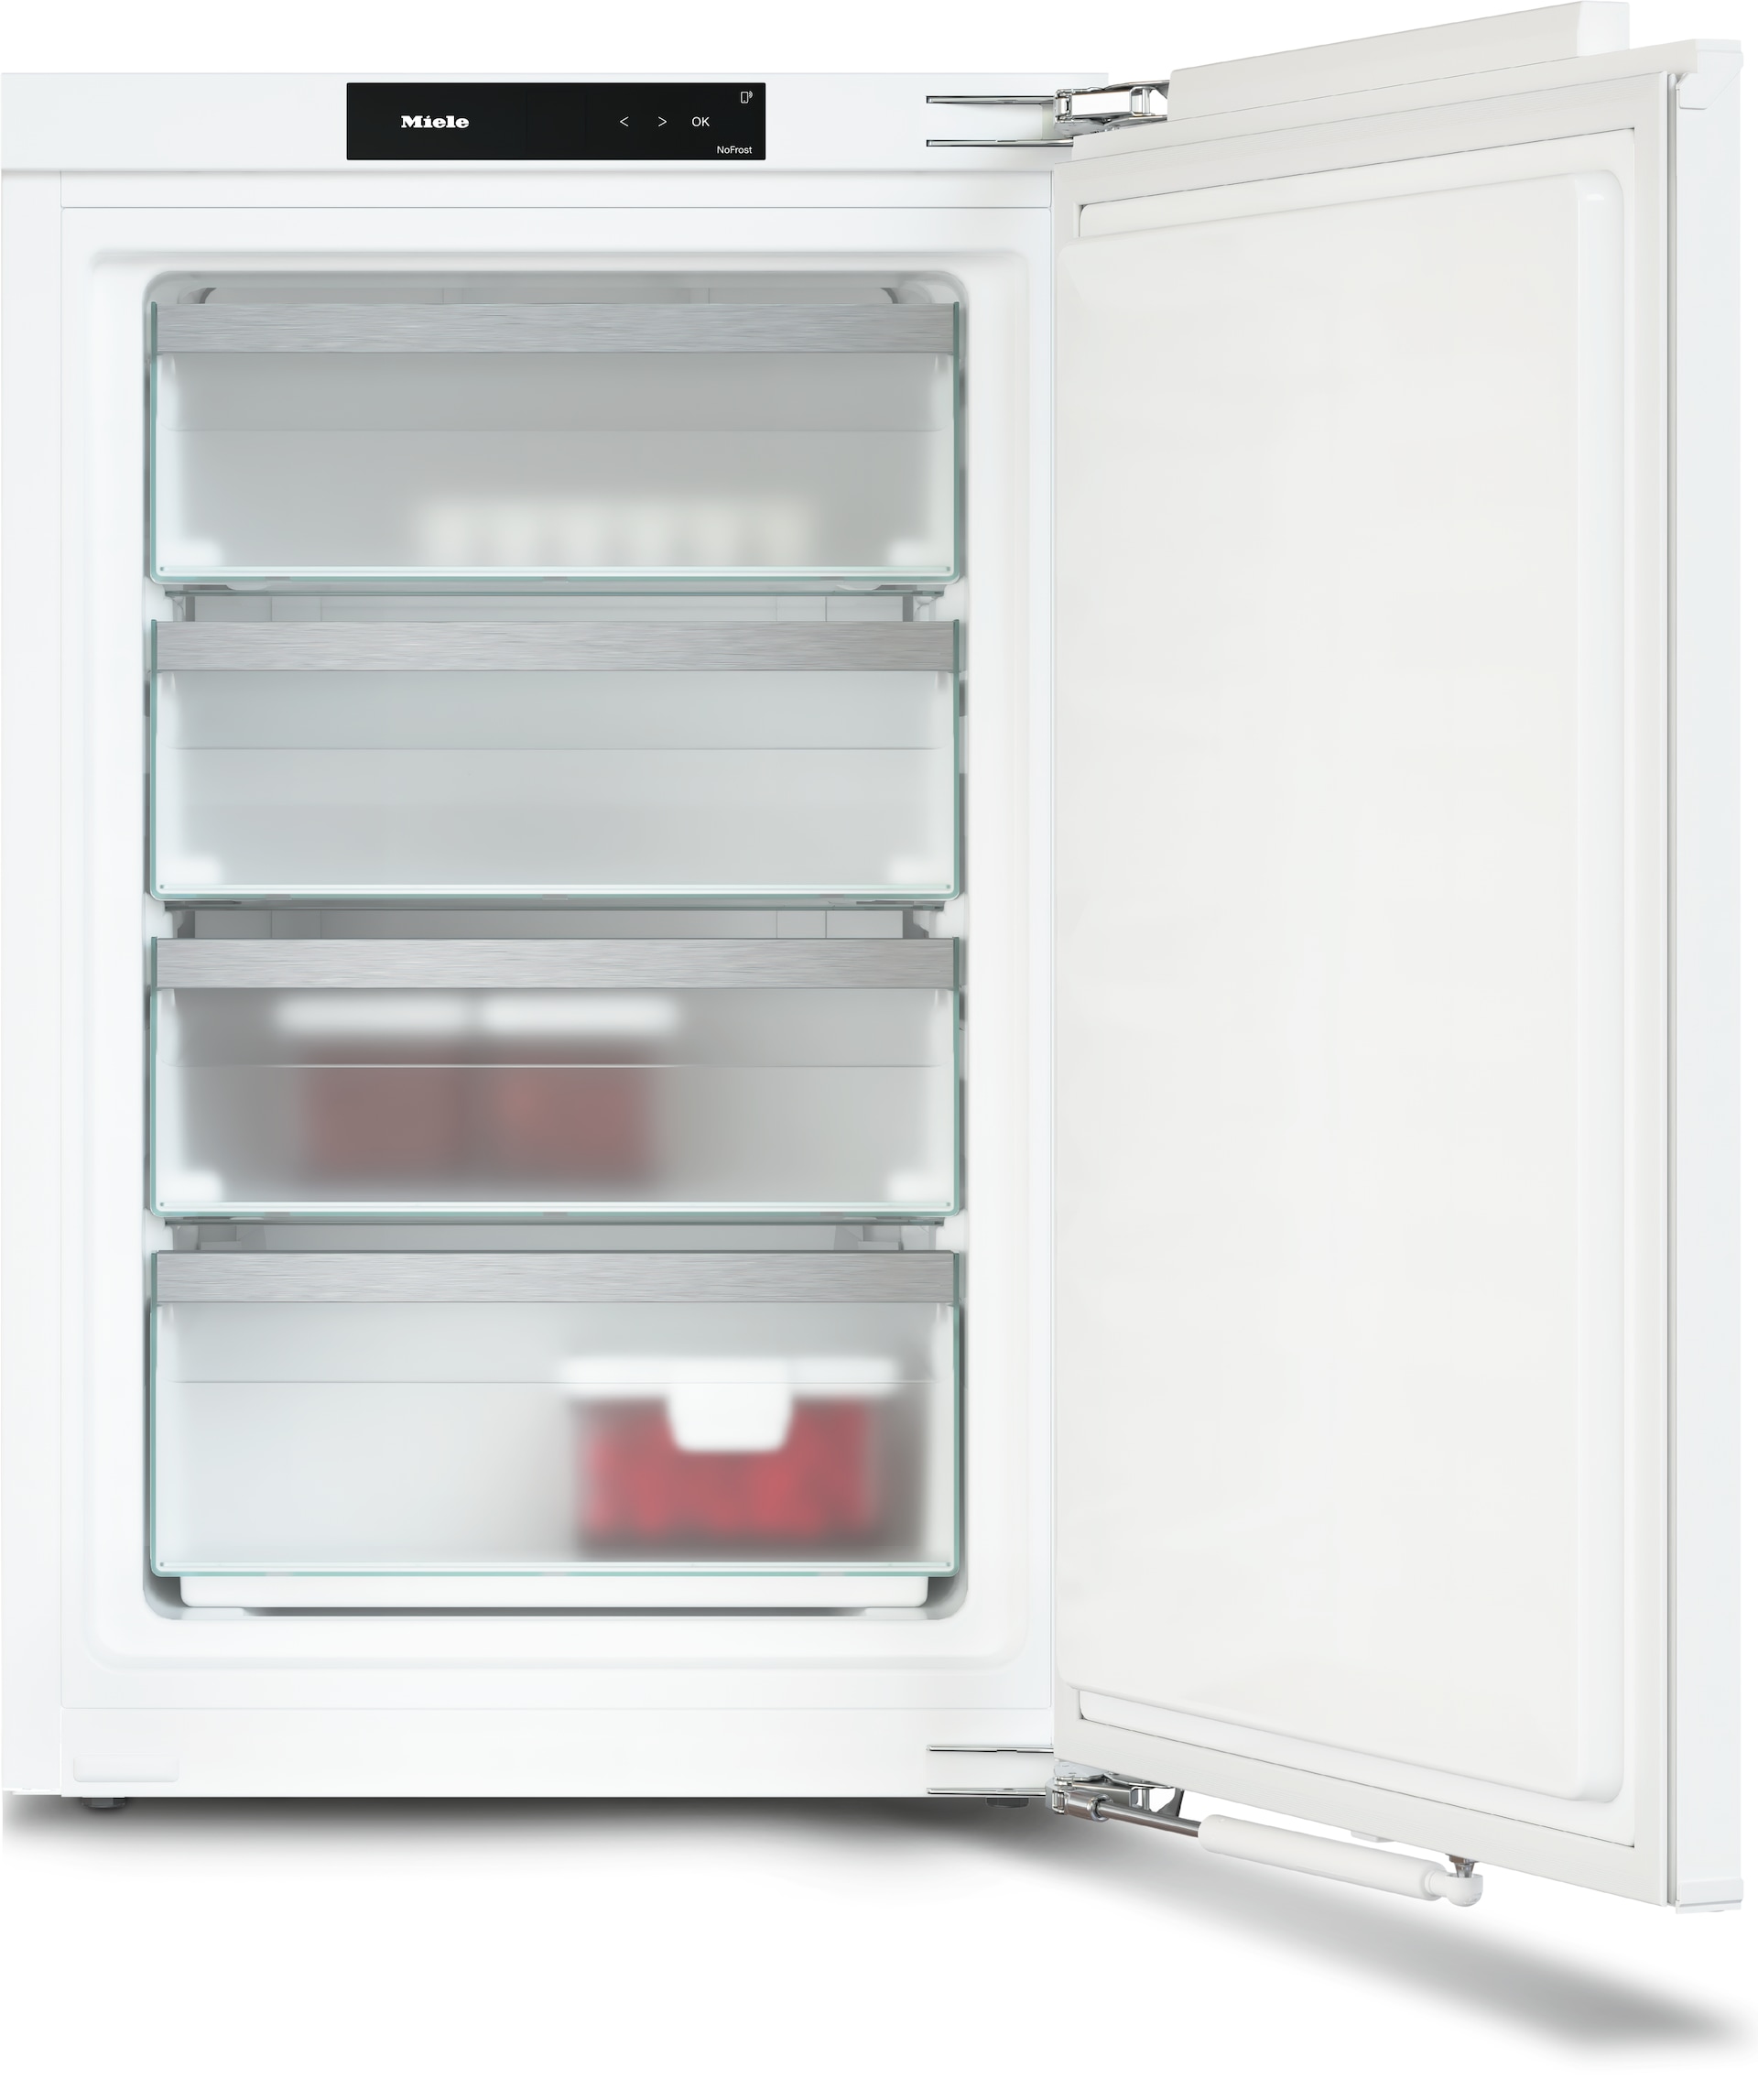 Refrigeration - FNS 7140 C - 1